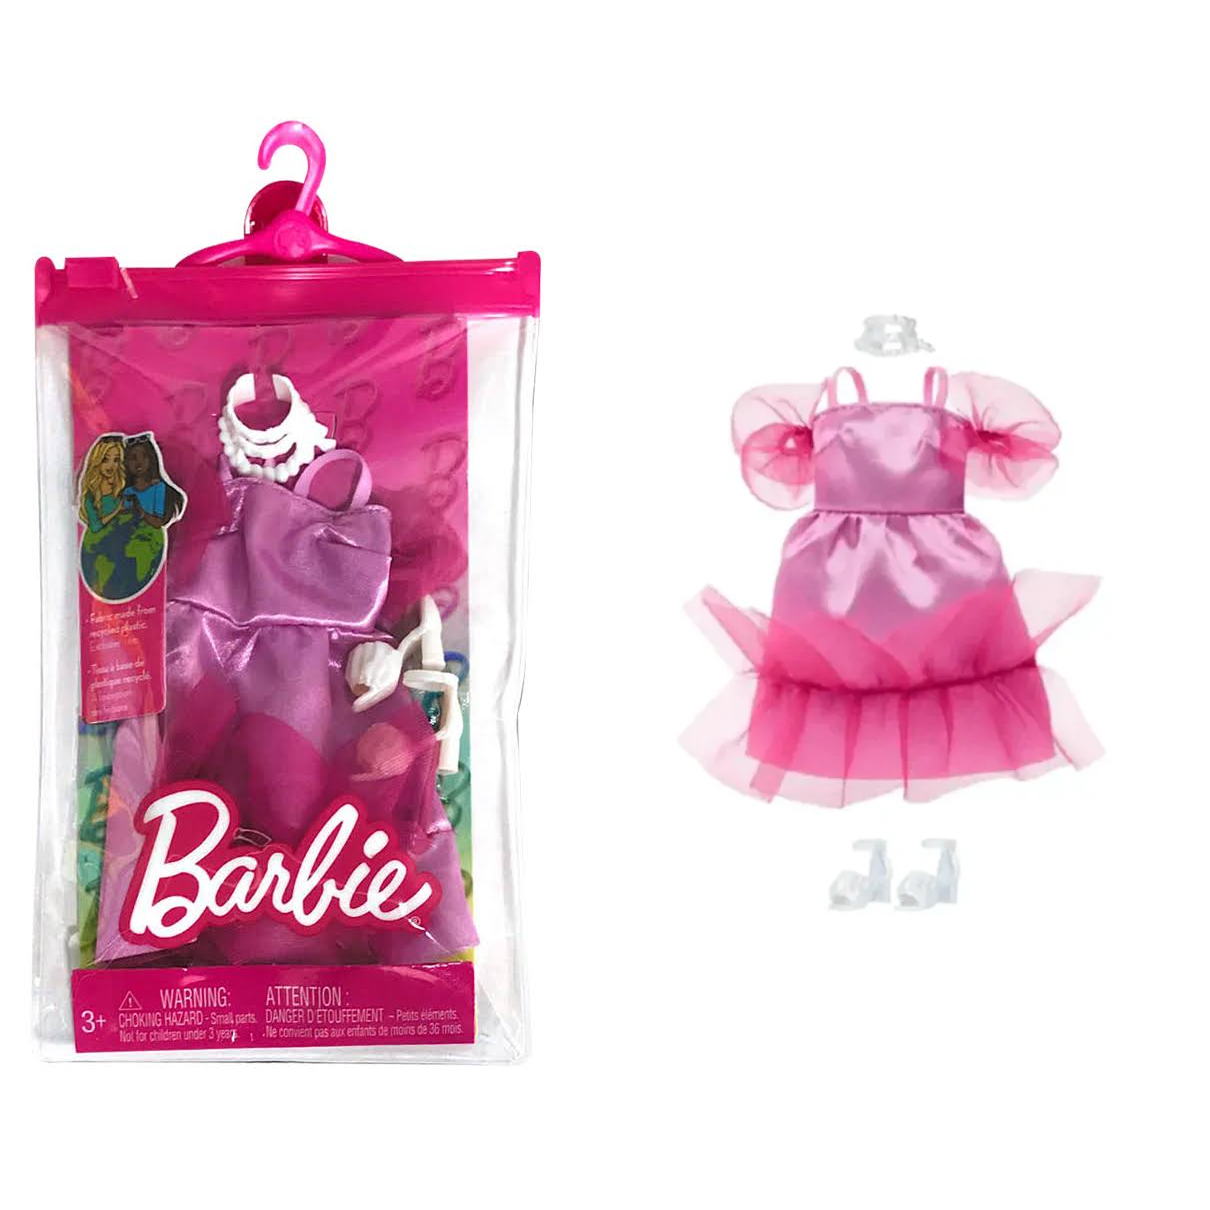 Conjunto 4 Barbie Mattel Roupas Estilosas